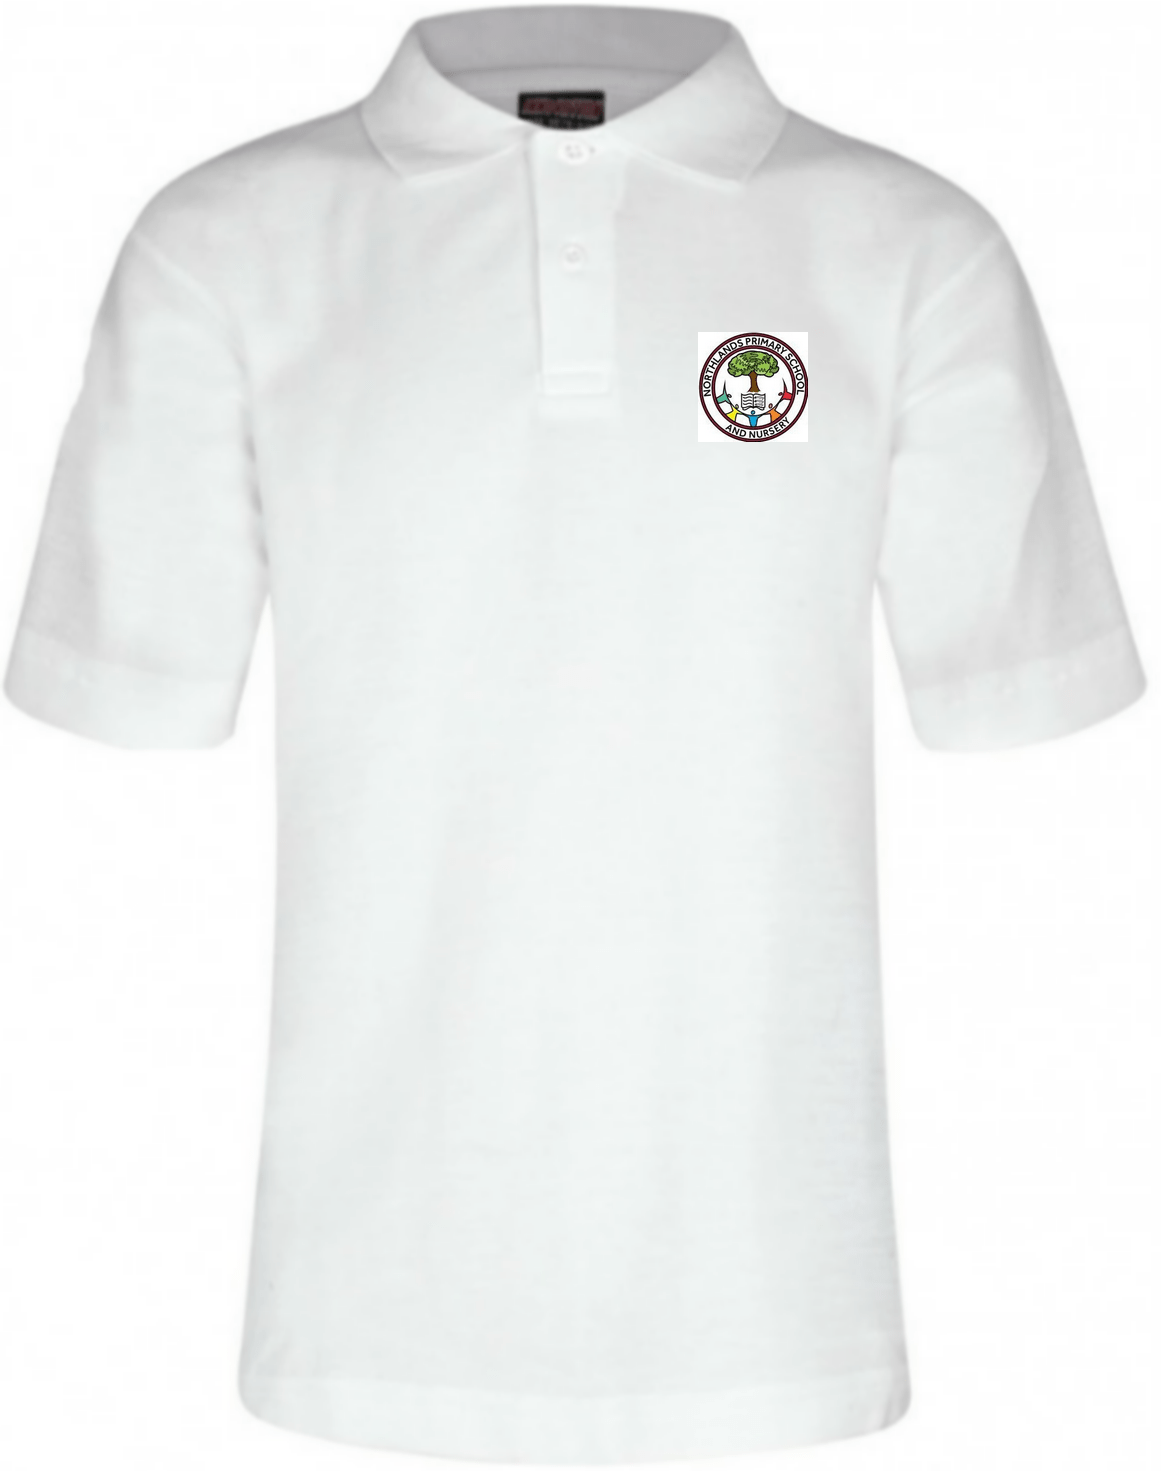 Northlands Junior School - White Polo Shirt with School Logo - Schoolwear Centres | School Uniform Centres